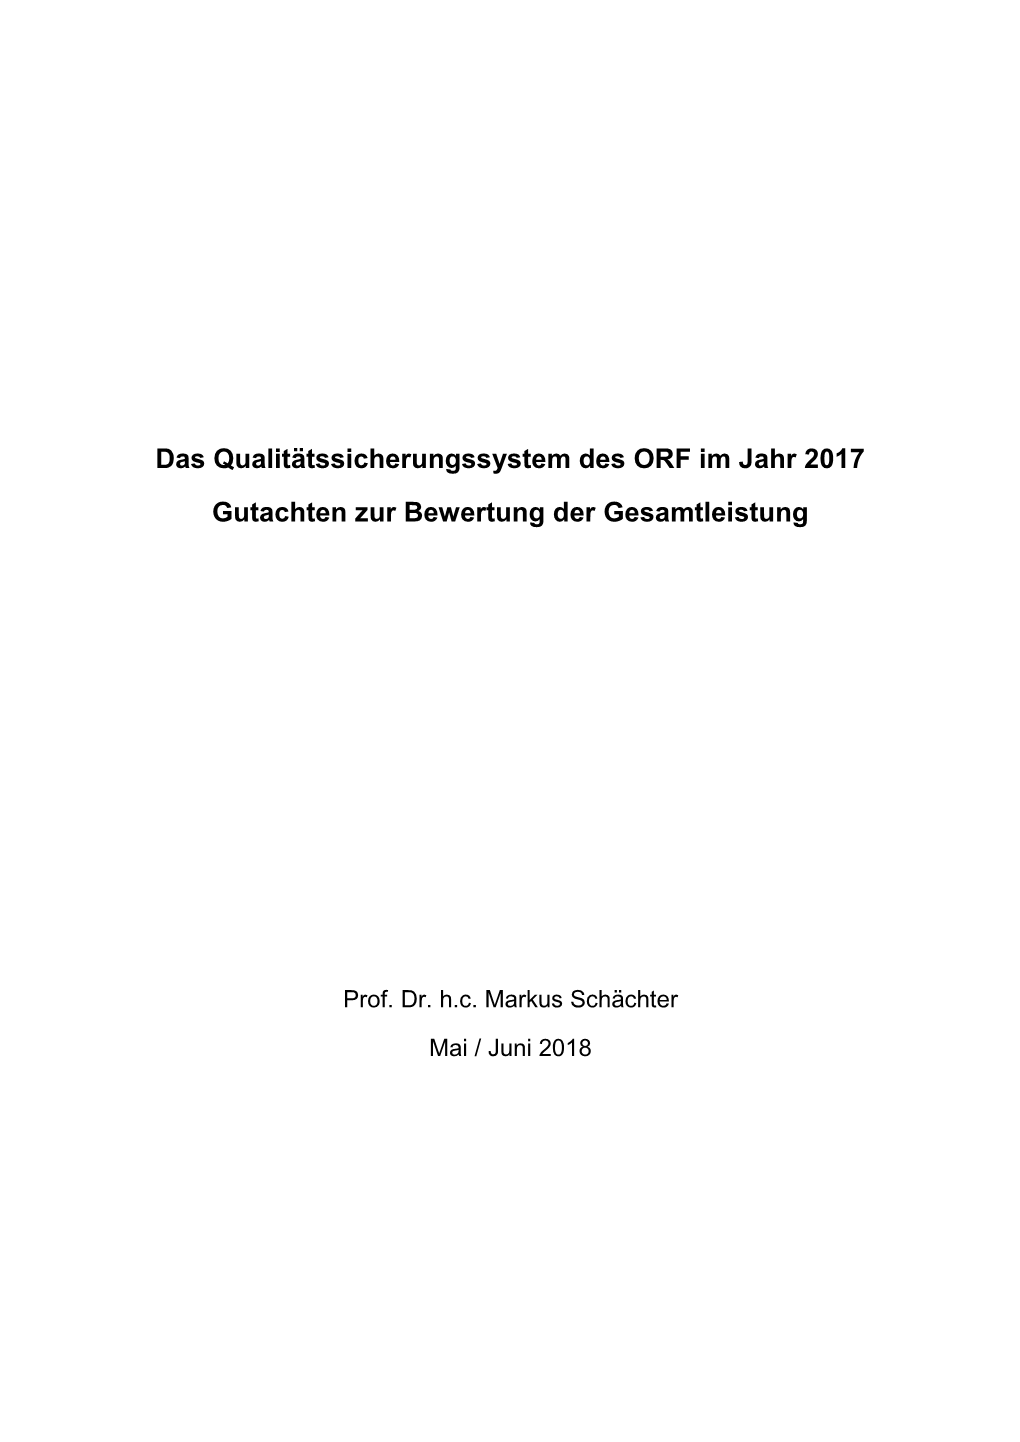 Das Qualitätssicherungssystem Des ORF Im Jahr 2017 Gutachten Zur Bewertung Der Gesamtleistung